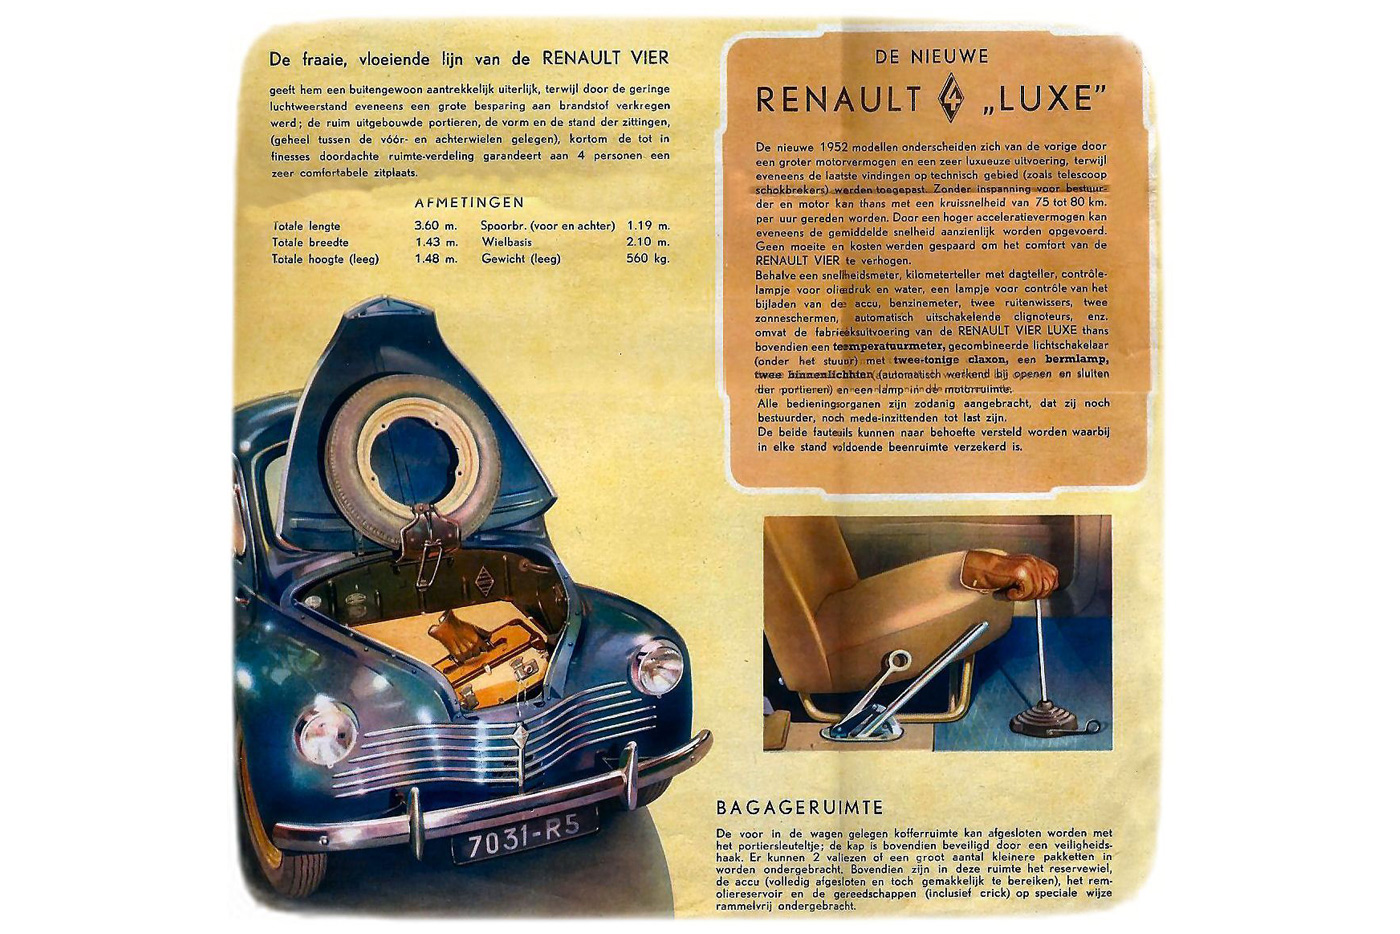 У первой послевоенной малолитражки Renault — 4CV — силовой агрегат располагался сзади, а багажник, соответственно, спереди. Запасное колесо крепилось оригинально — к тыльной стороне крышки багажника